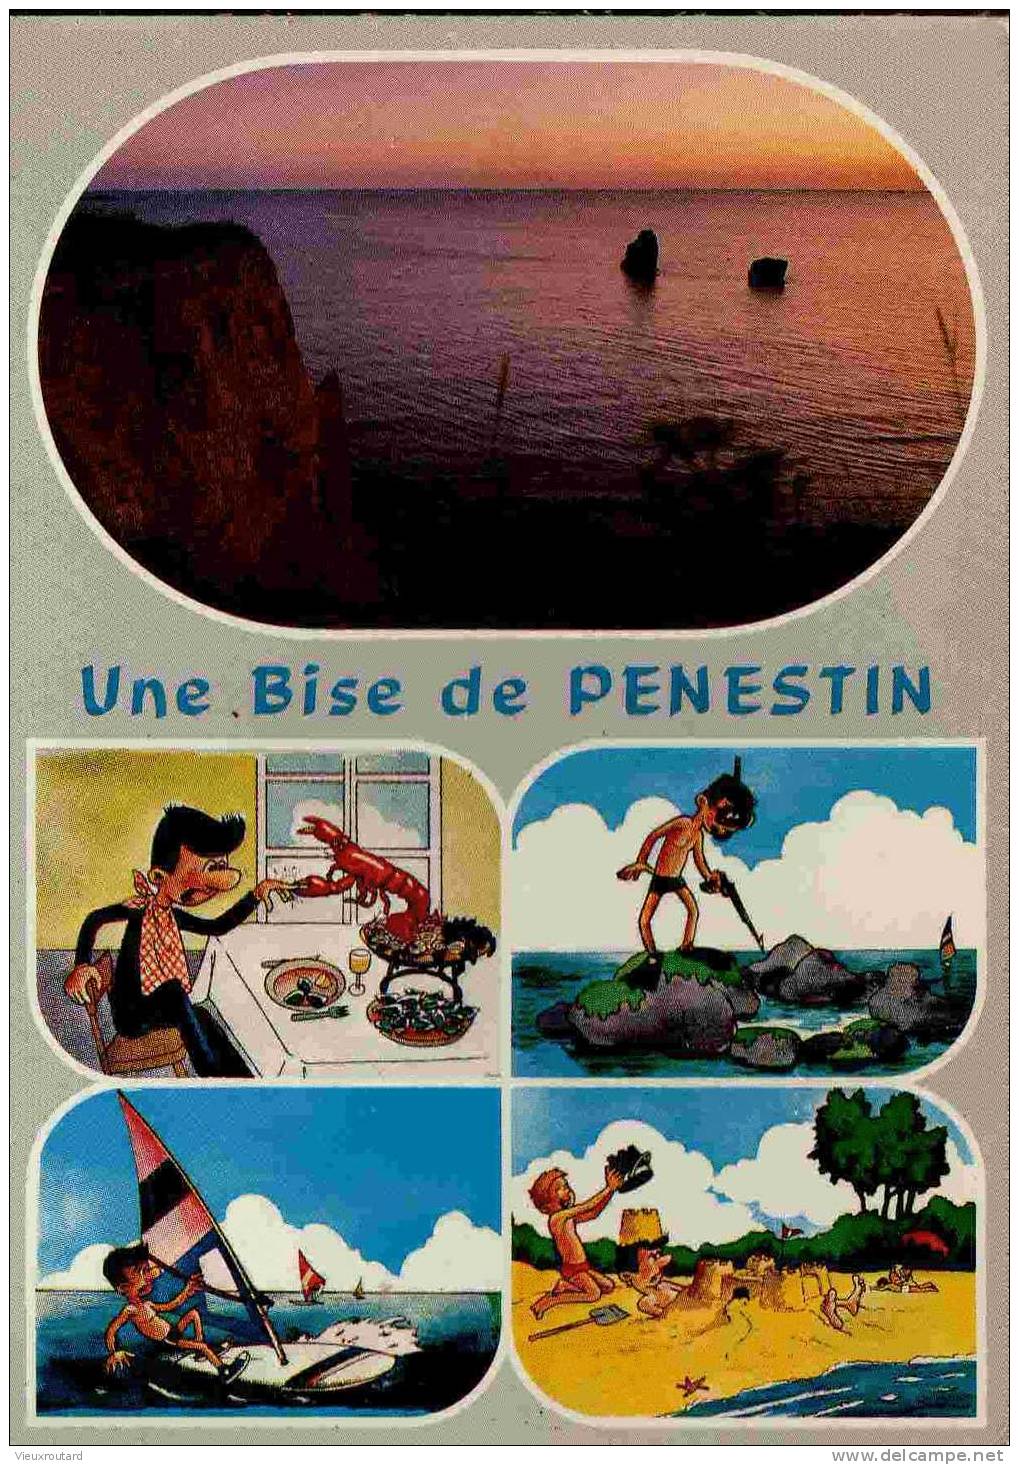 CPSM. PENESTIN. LES ROCHERS DES DEMOISELLES AU CREPUSCULE. DATEE 1987. - Pénestin